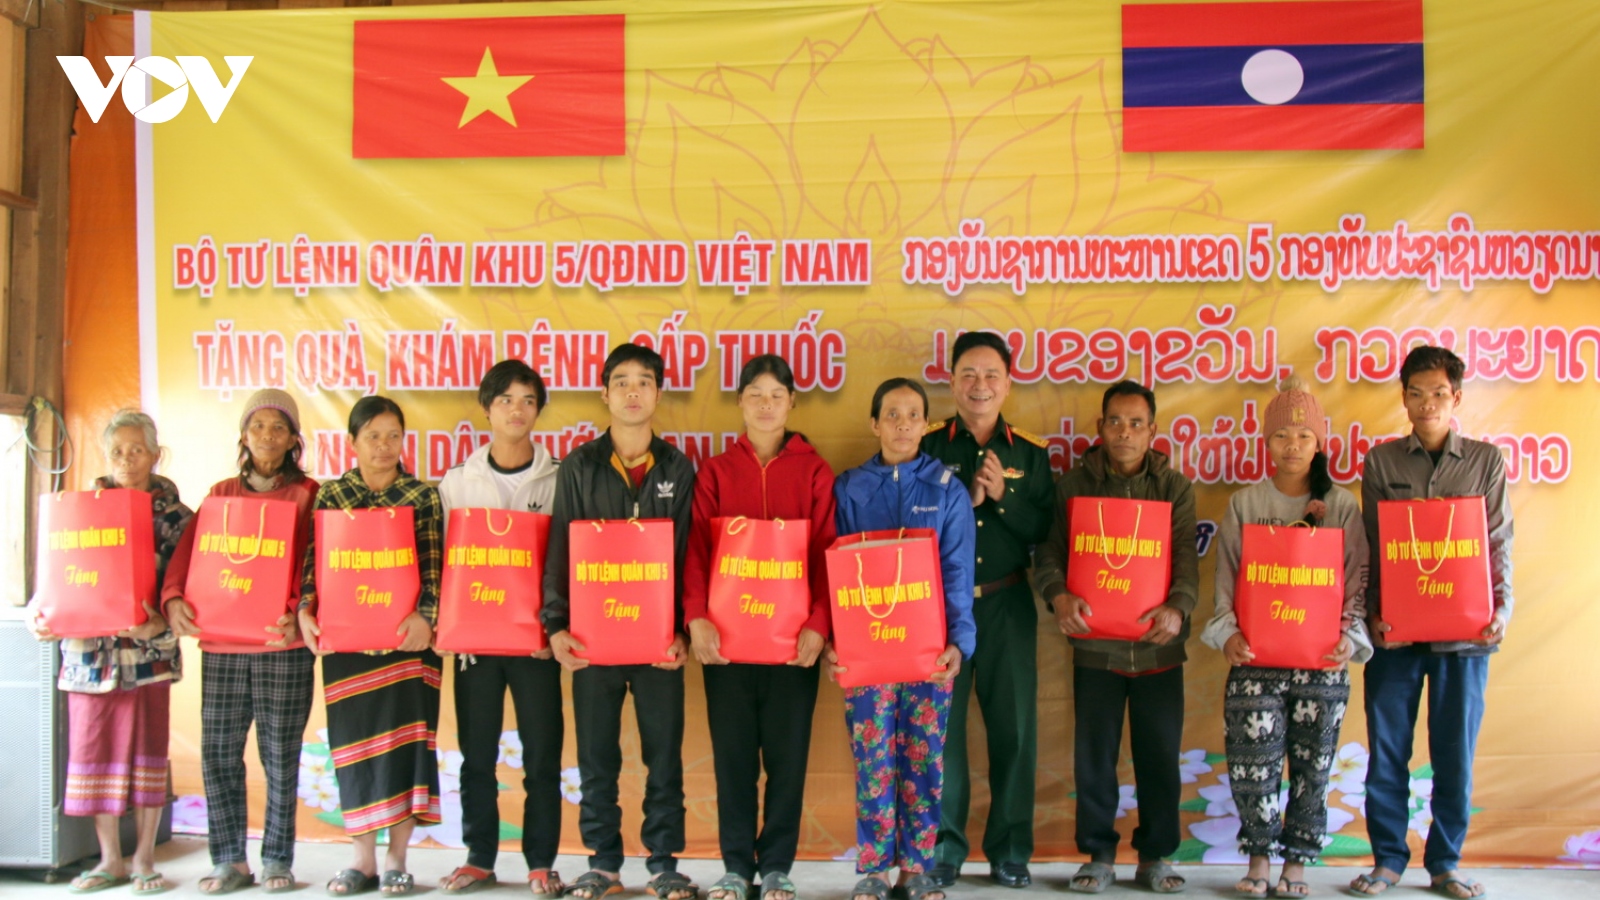 Đoàn công tác Quân khu 5 tặng quà, khám bệnh miễn phí tại tỉnh Sê Kông, Lào